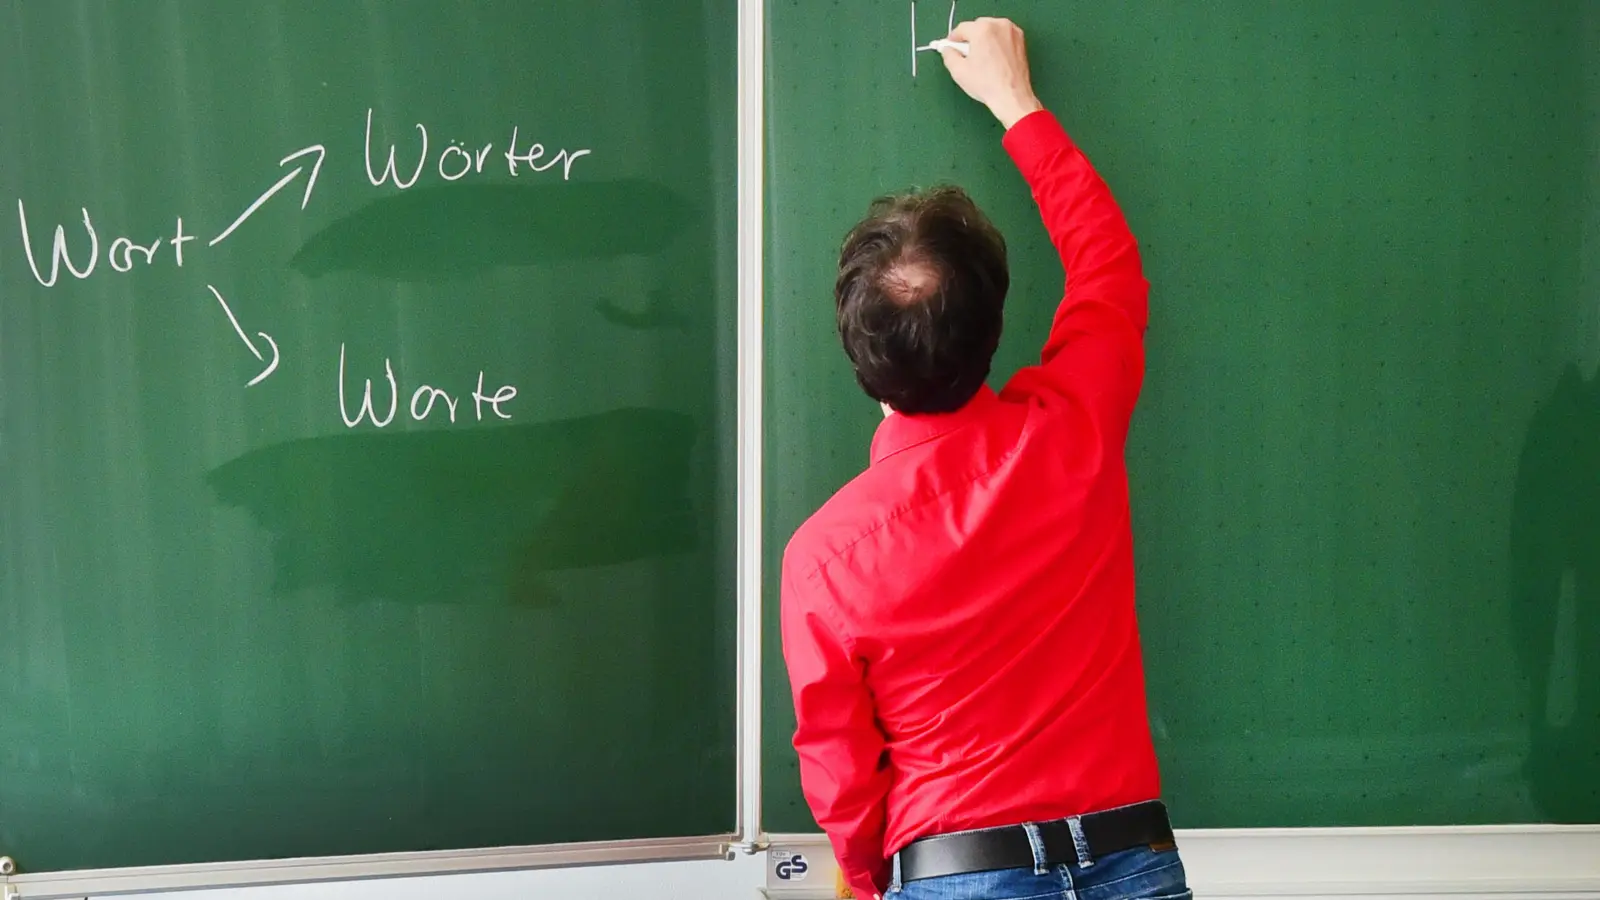 Der Lehrermangel sei hauptverantwortlich für das aktuell eher durchwachsene Bildungsniveau. (Foto: Jim Albright)